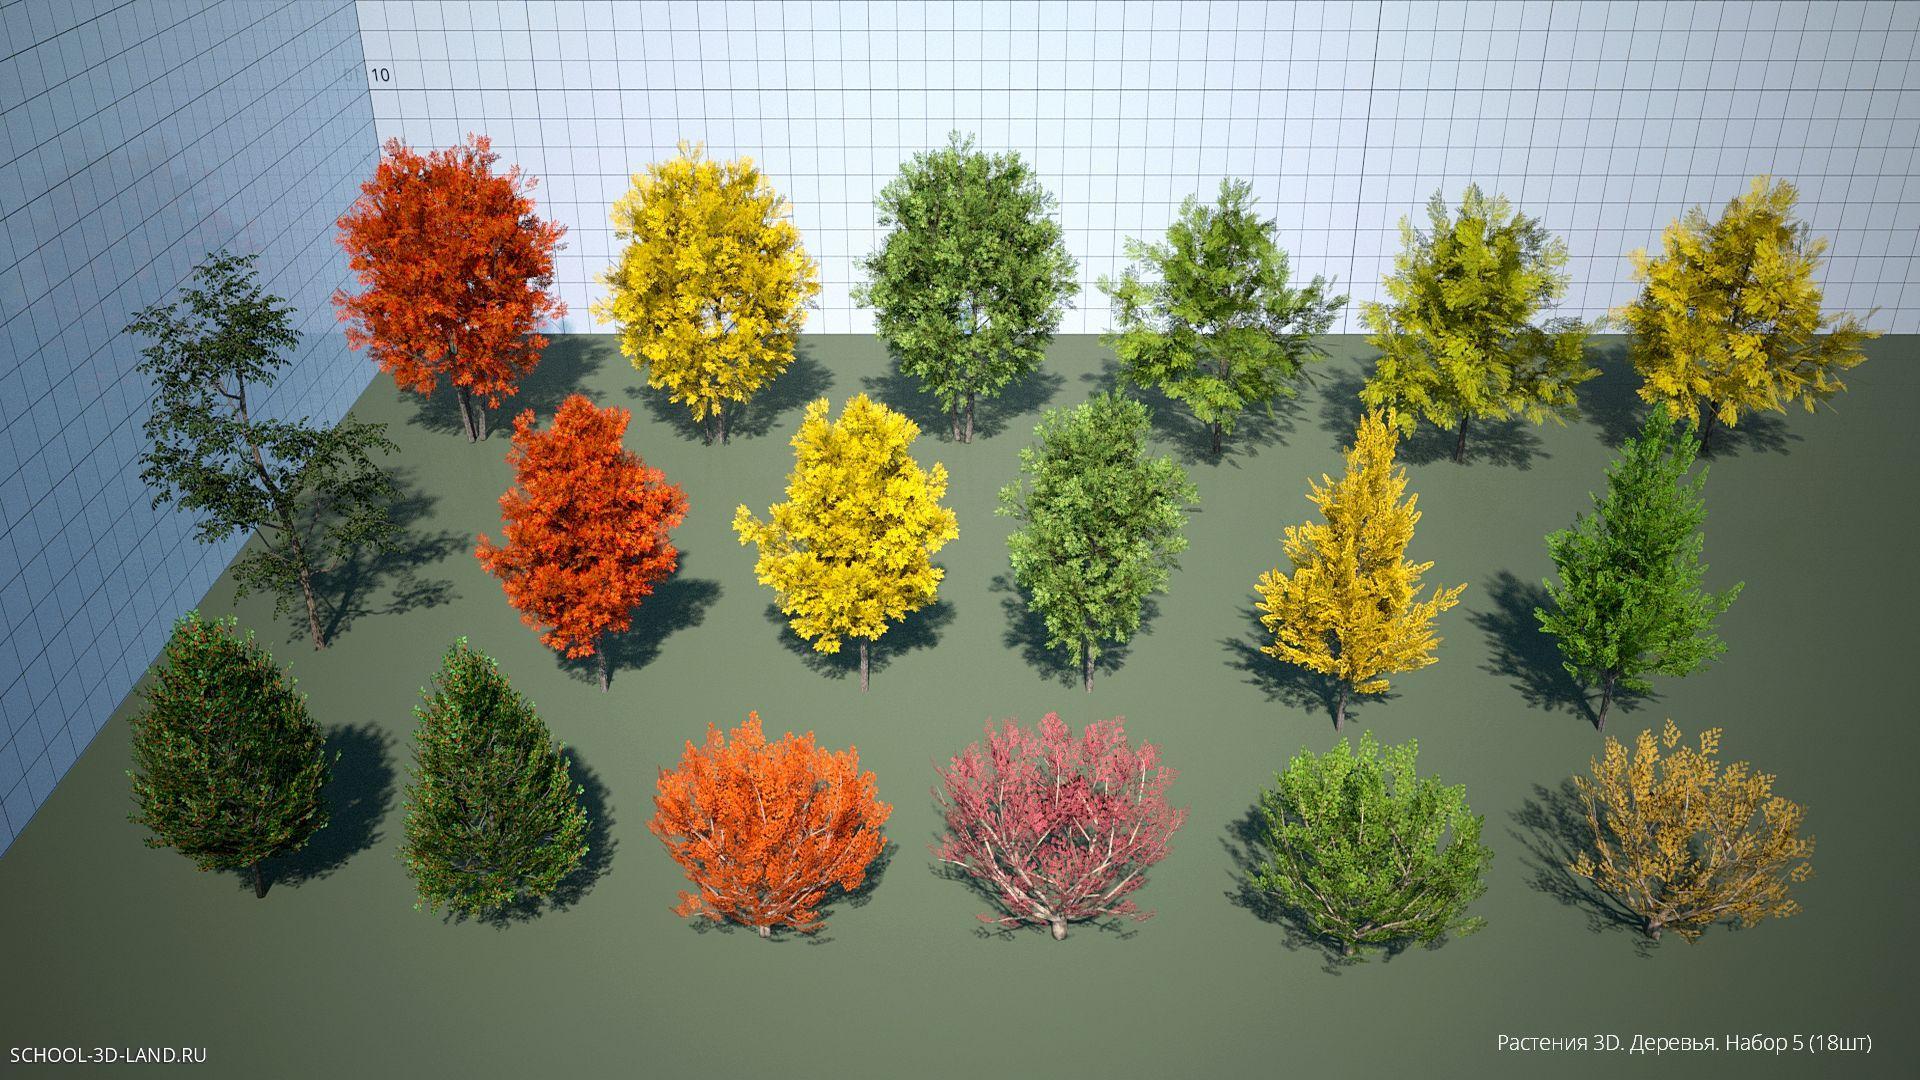 Растения 3D. Деревья. Набор 6 (18шт)